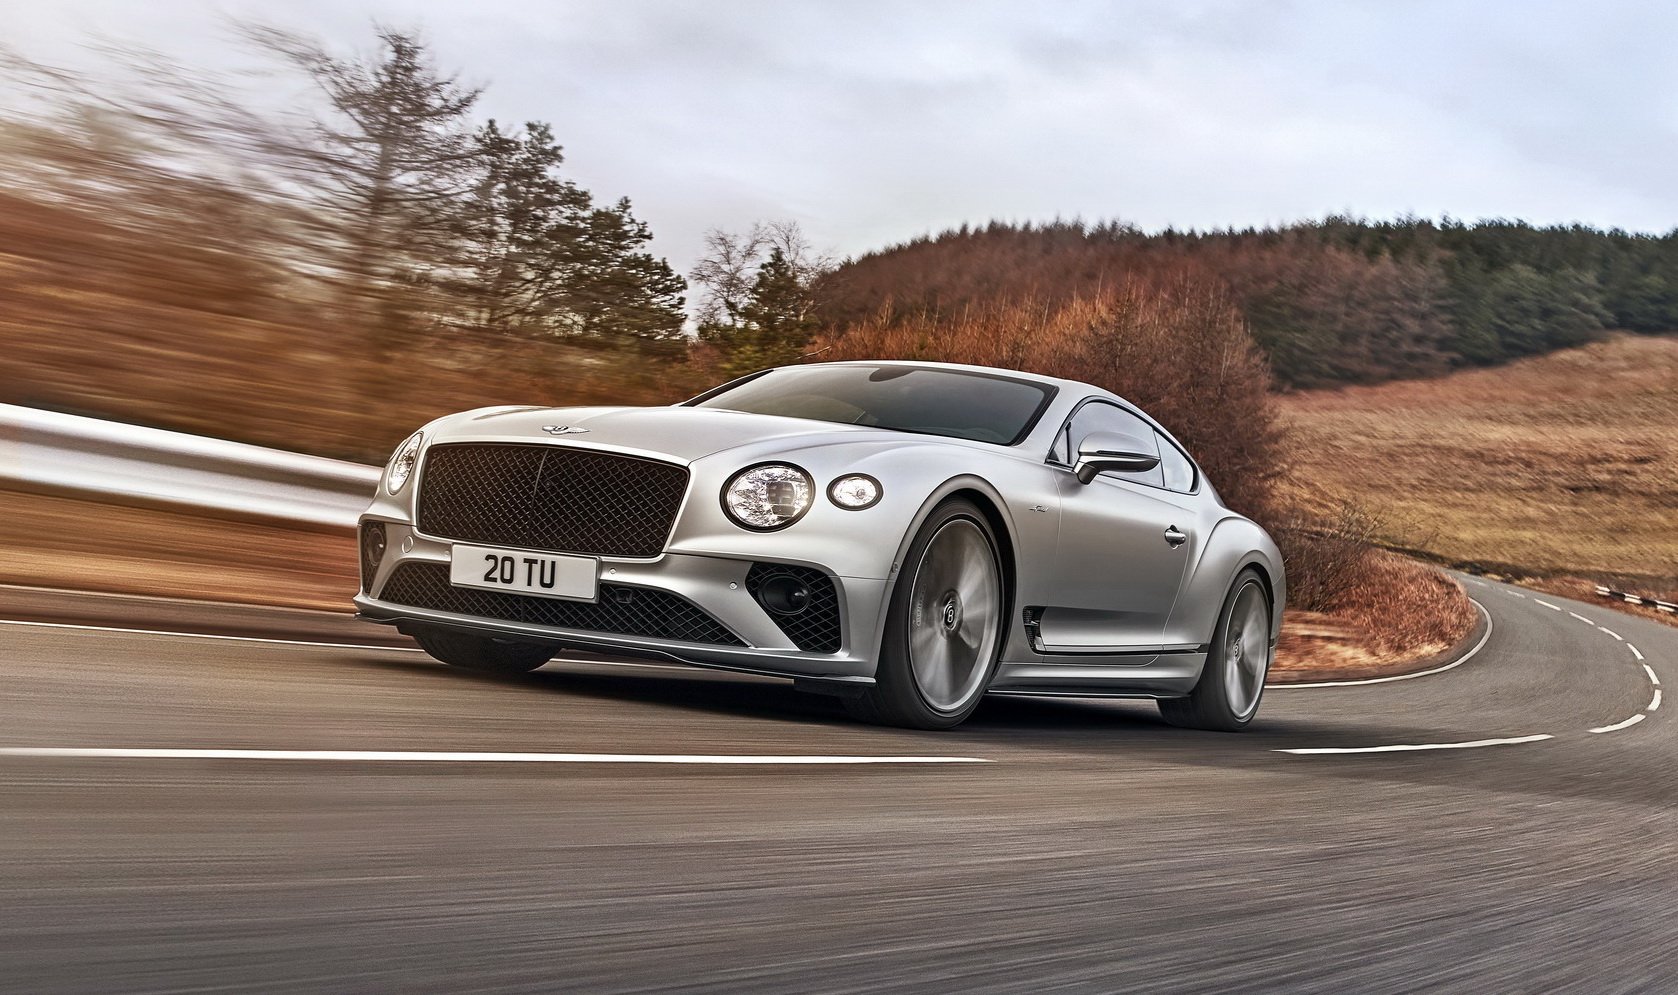 ใหม่ล่าสุด! Bentley Continental GT Speed ผู้ดีที่แฝงความดิบเพิ่มขึ้น